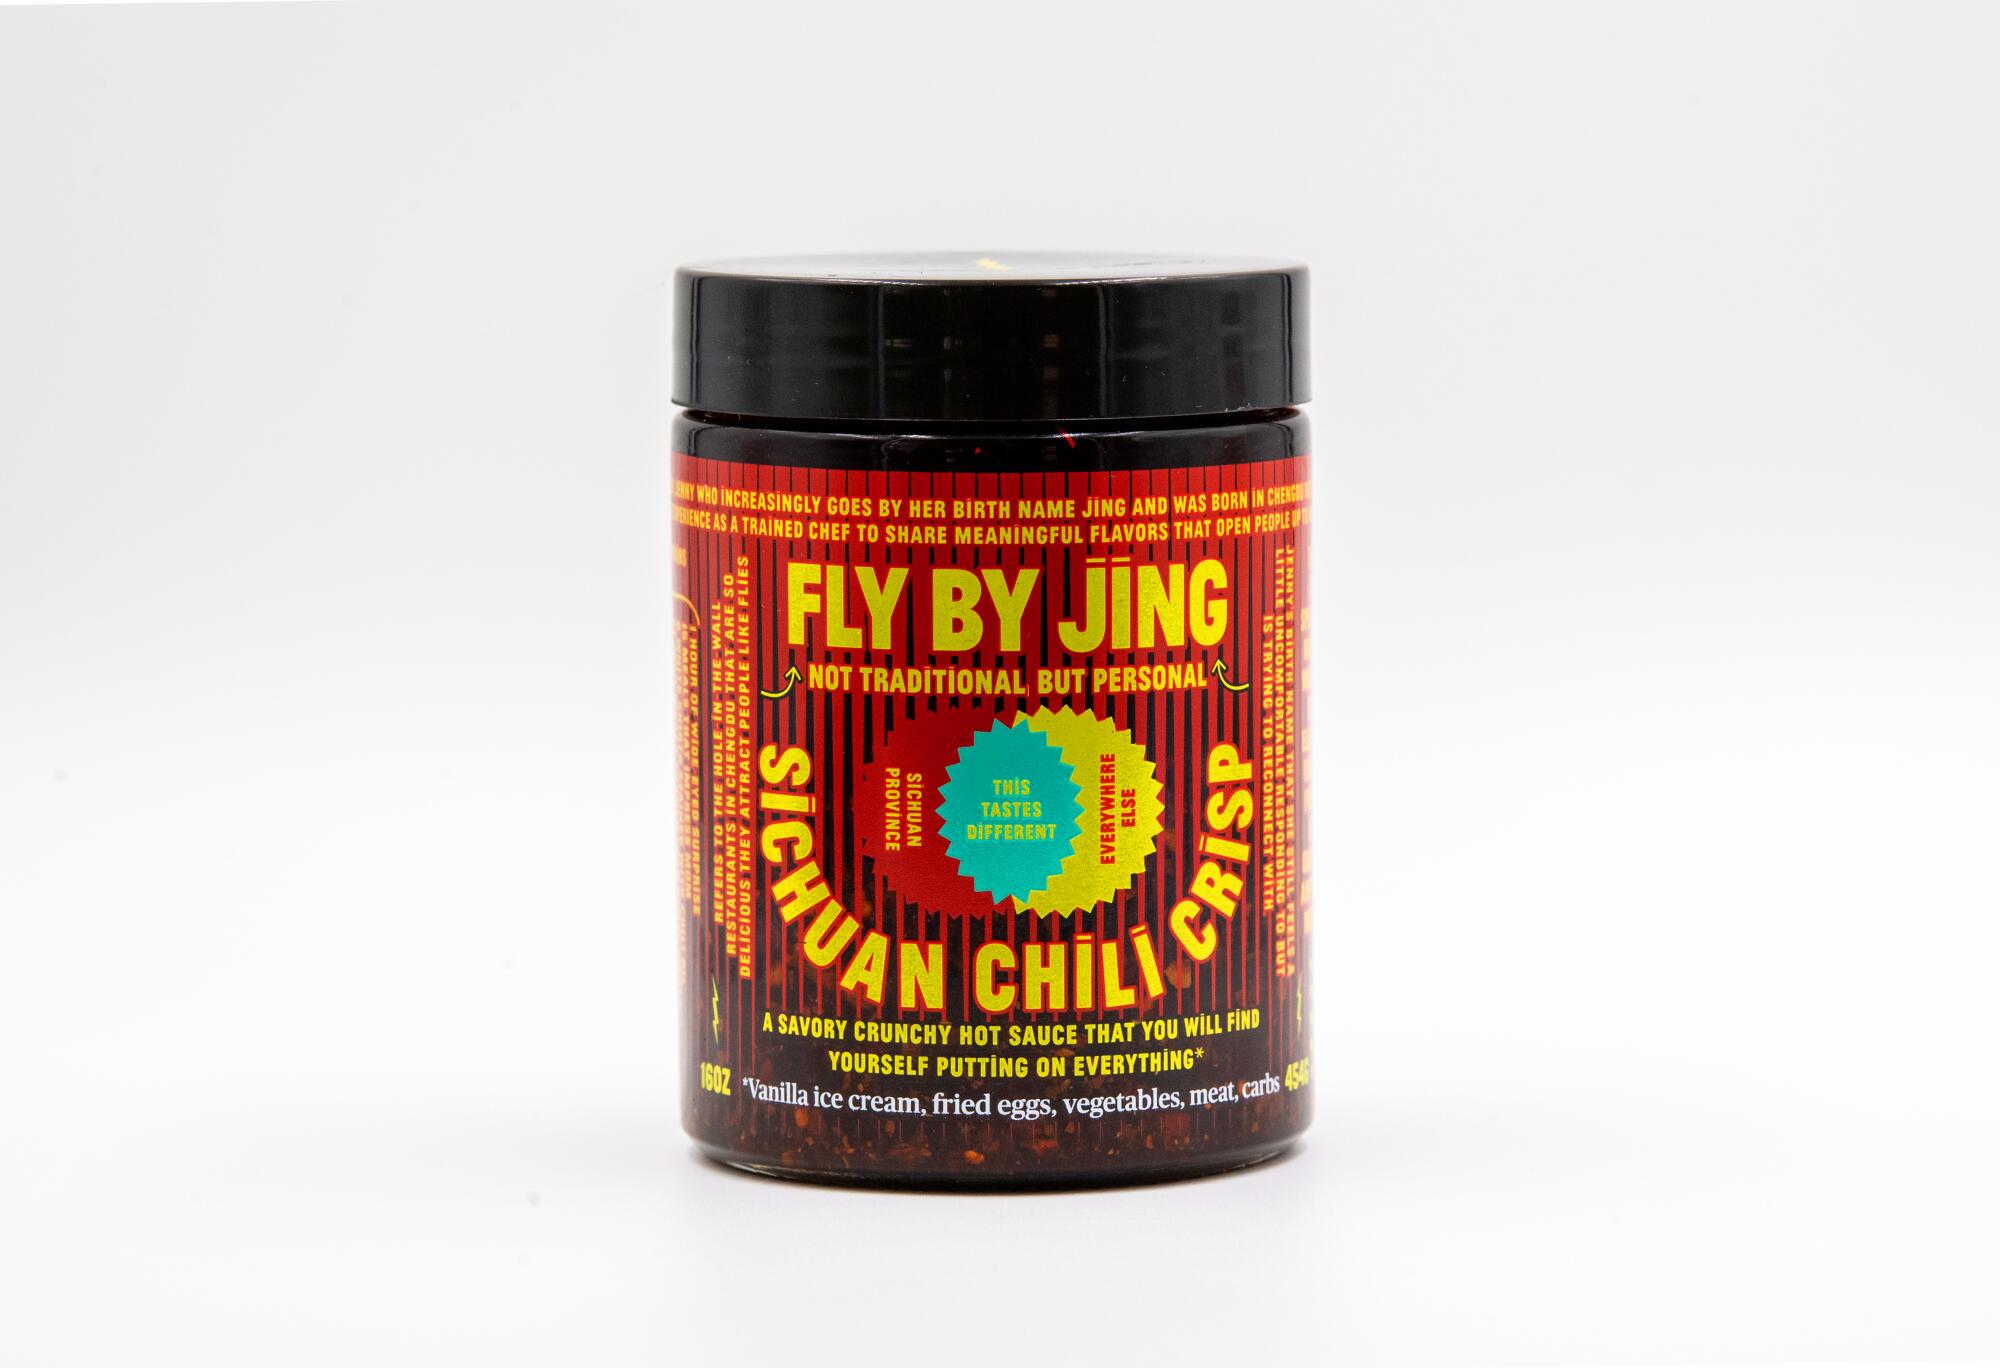 A jar of Jing Gao's Fly by Jing Sichuan Chili Crisp.